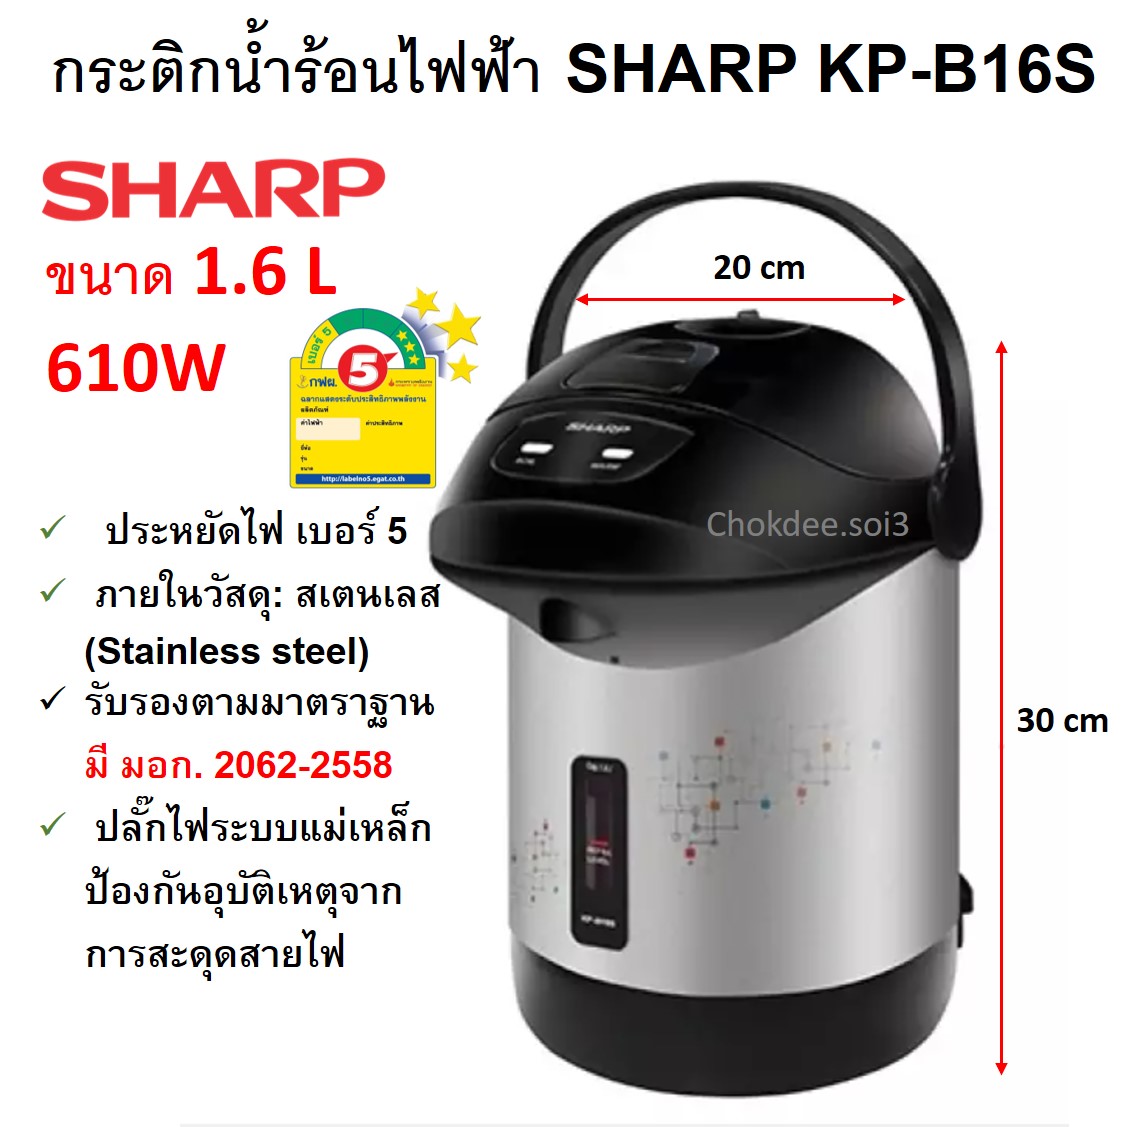 SHARP กระติกน้ำร้อนไฟฟ้า รุ่น KP-B16S 1.6 ลิตร 610 วัตต์ (ขายคละลาย คละสี) กาน้ำร้อนไฟฟ้า กาต้มน้ำไฟฟ้า SHARP Electric Jar Pot  ประหยัดไฟเบอร์ 5 ของแท้